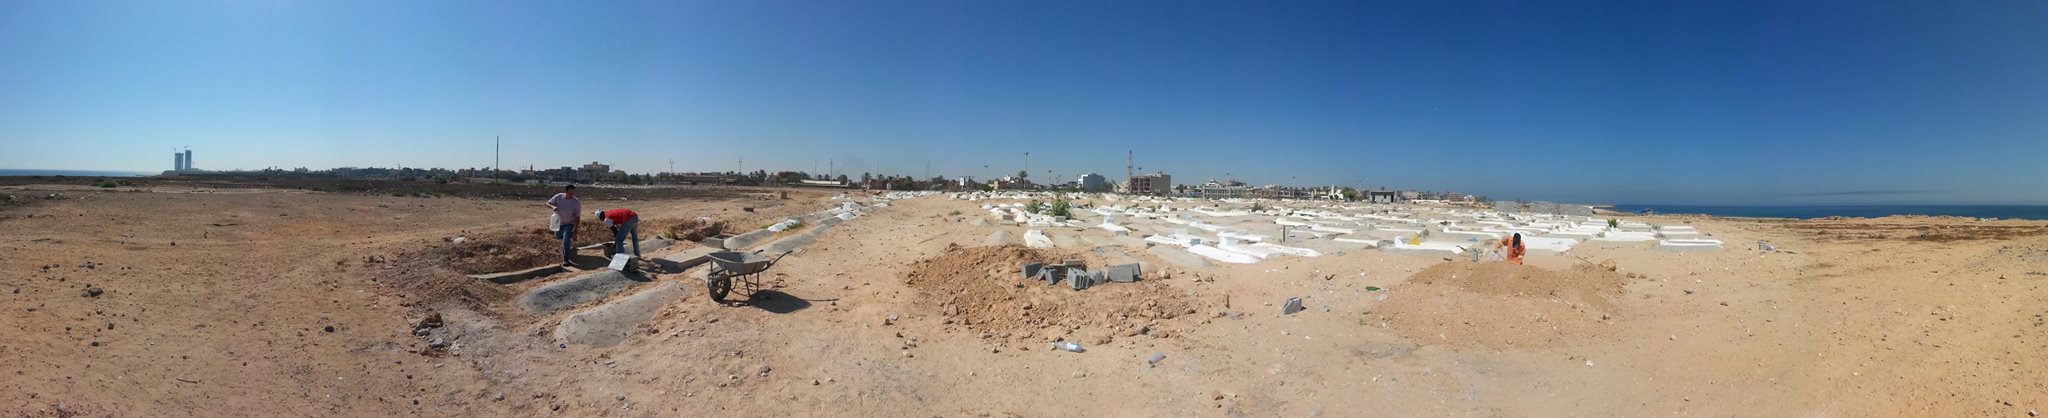 بانوراما لمقبرة الشط بشط الهنشير في طرابلس